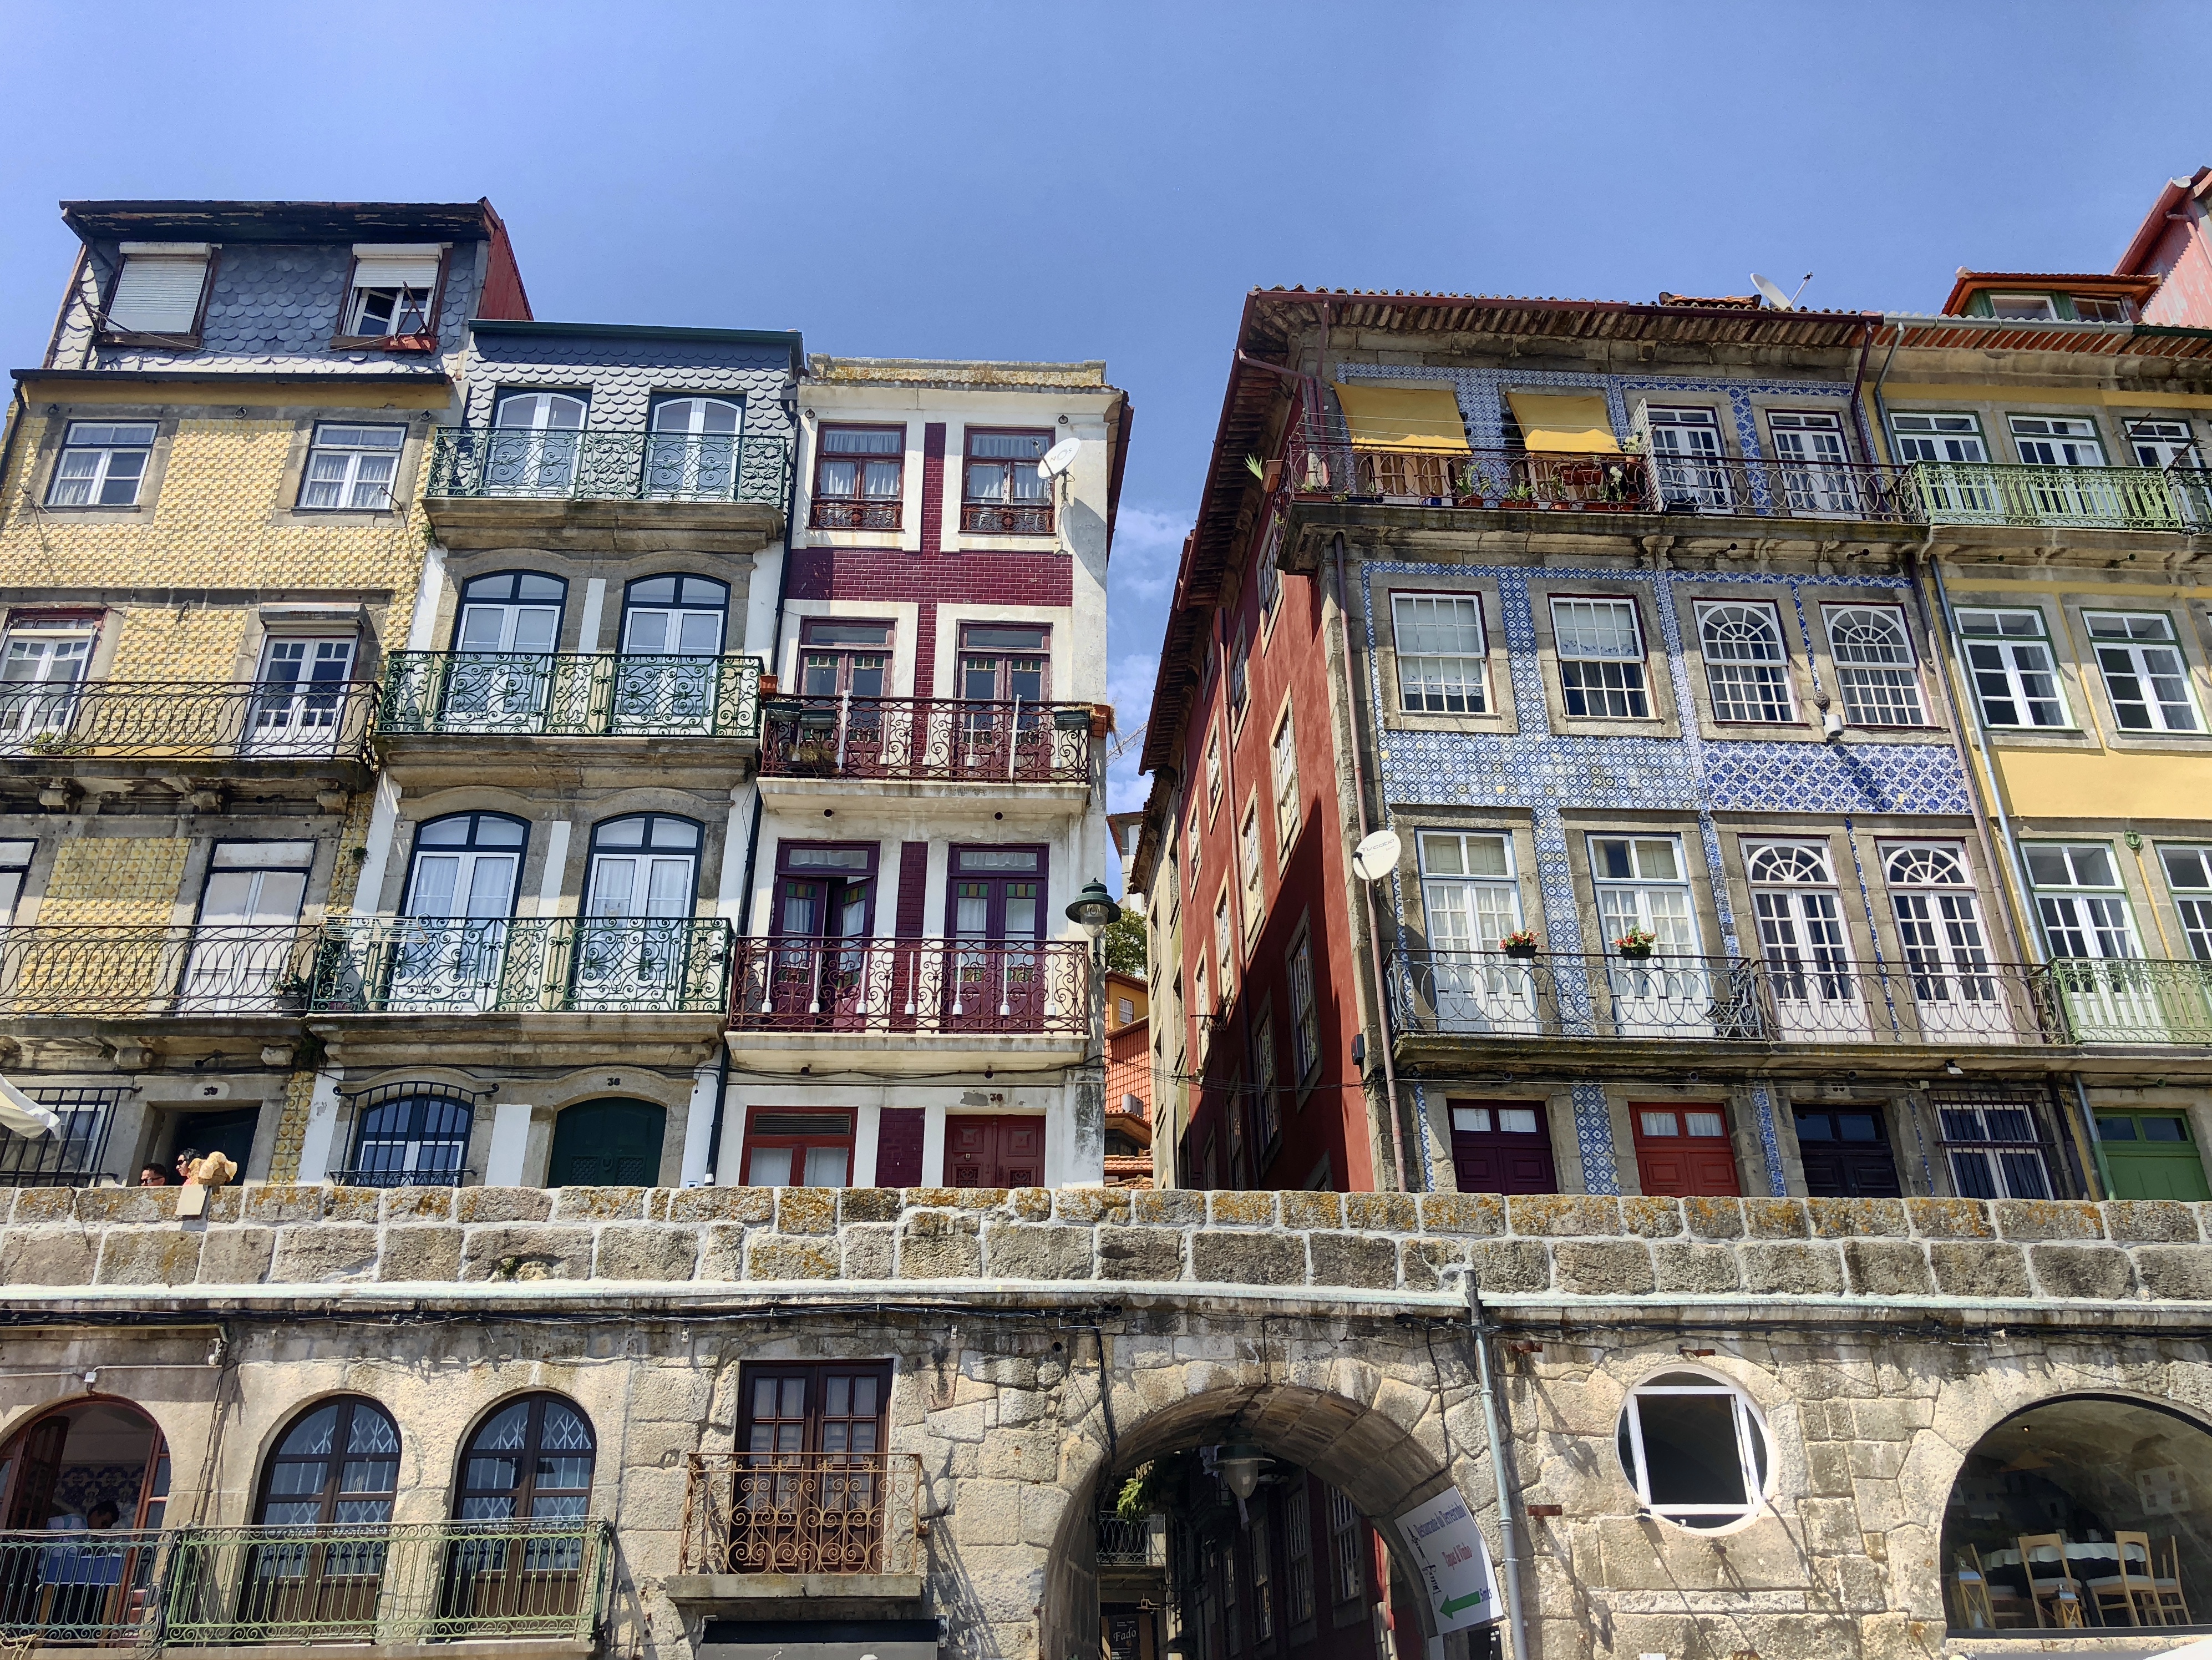 Altbauten mit Kacheln an der Hausfassade in Porto